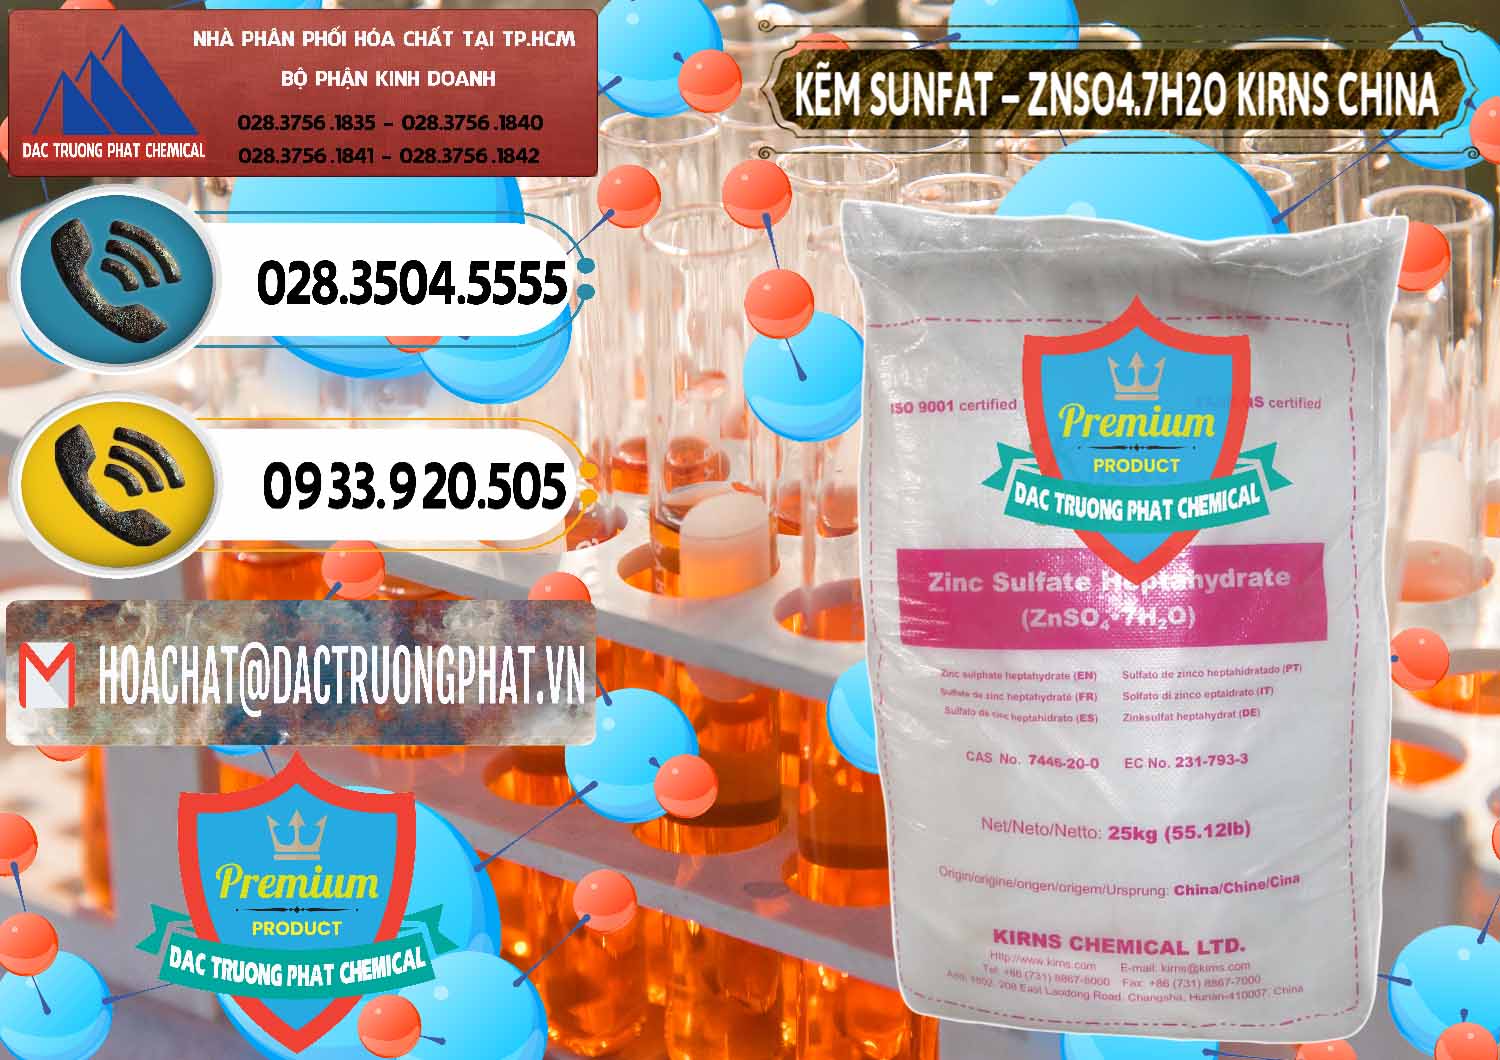 Chuyên kinh doanh - bán Kẽm Sunfat – ZNSO4.7H2O Kirns Trung Quốc China - 0089 - Chuyên cung cấp - phân phối hóa chất tại TP.HCM - hoachatdetnhuom.vn